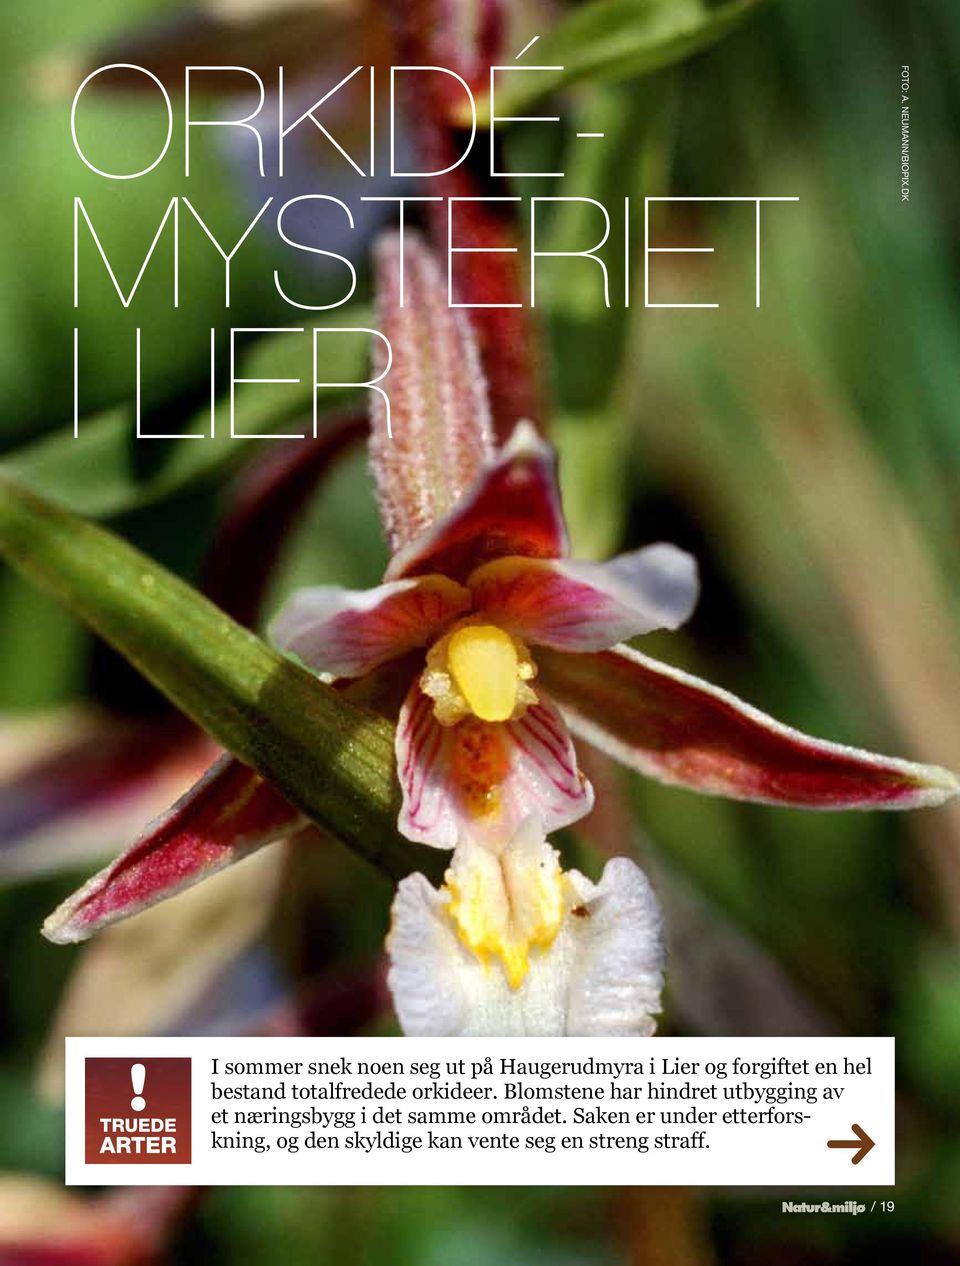 hel bestand totalfredede orkideer.